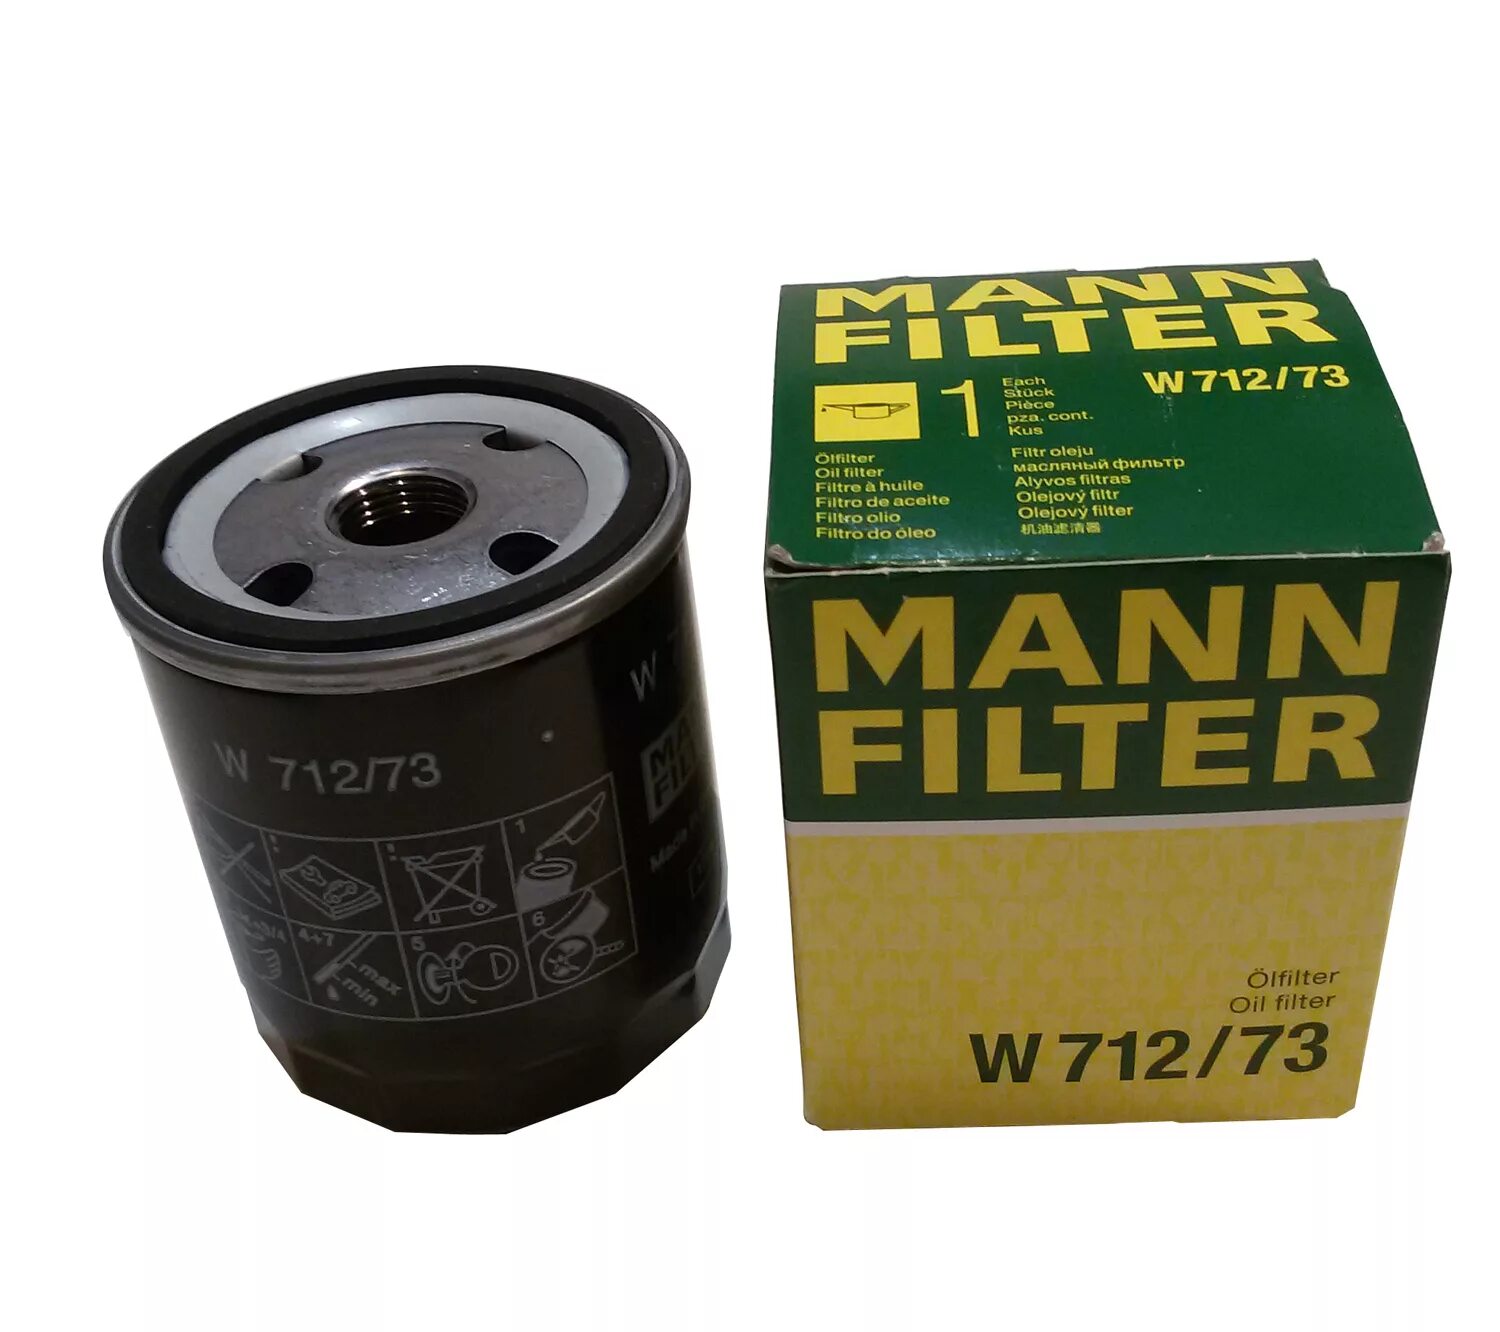 Масляный фильтр 1. Mann-Filter w 712/73 фильтр масляный. Масляный фильтр Mann Mazda 3 2.0. Мазда 3 2011 масляный фильтр Mann. Мазда 2 1.5 фильтр масляный ман.